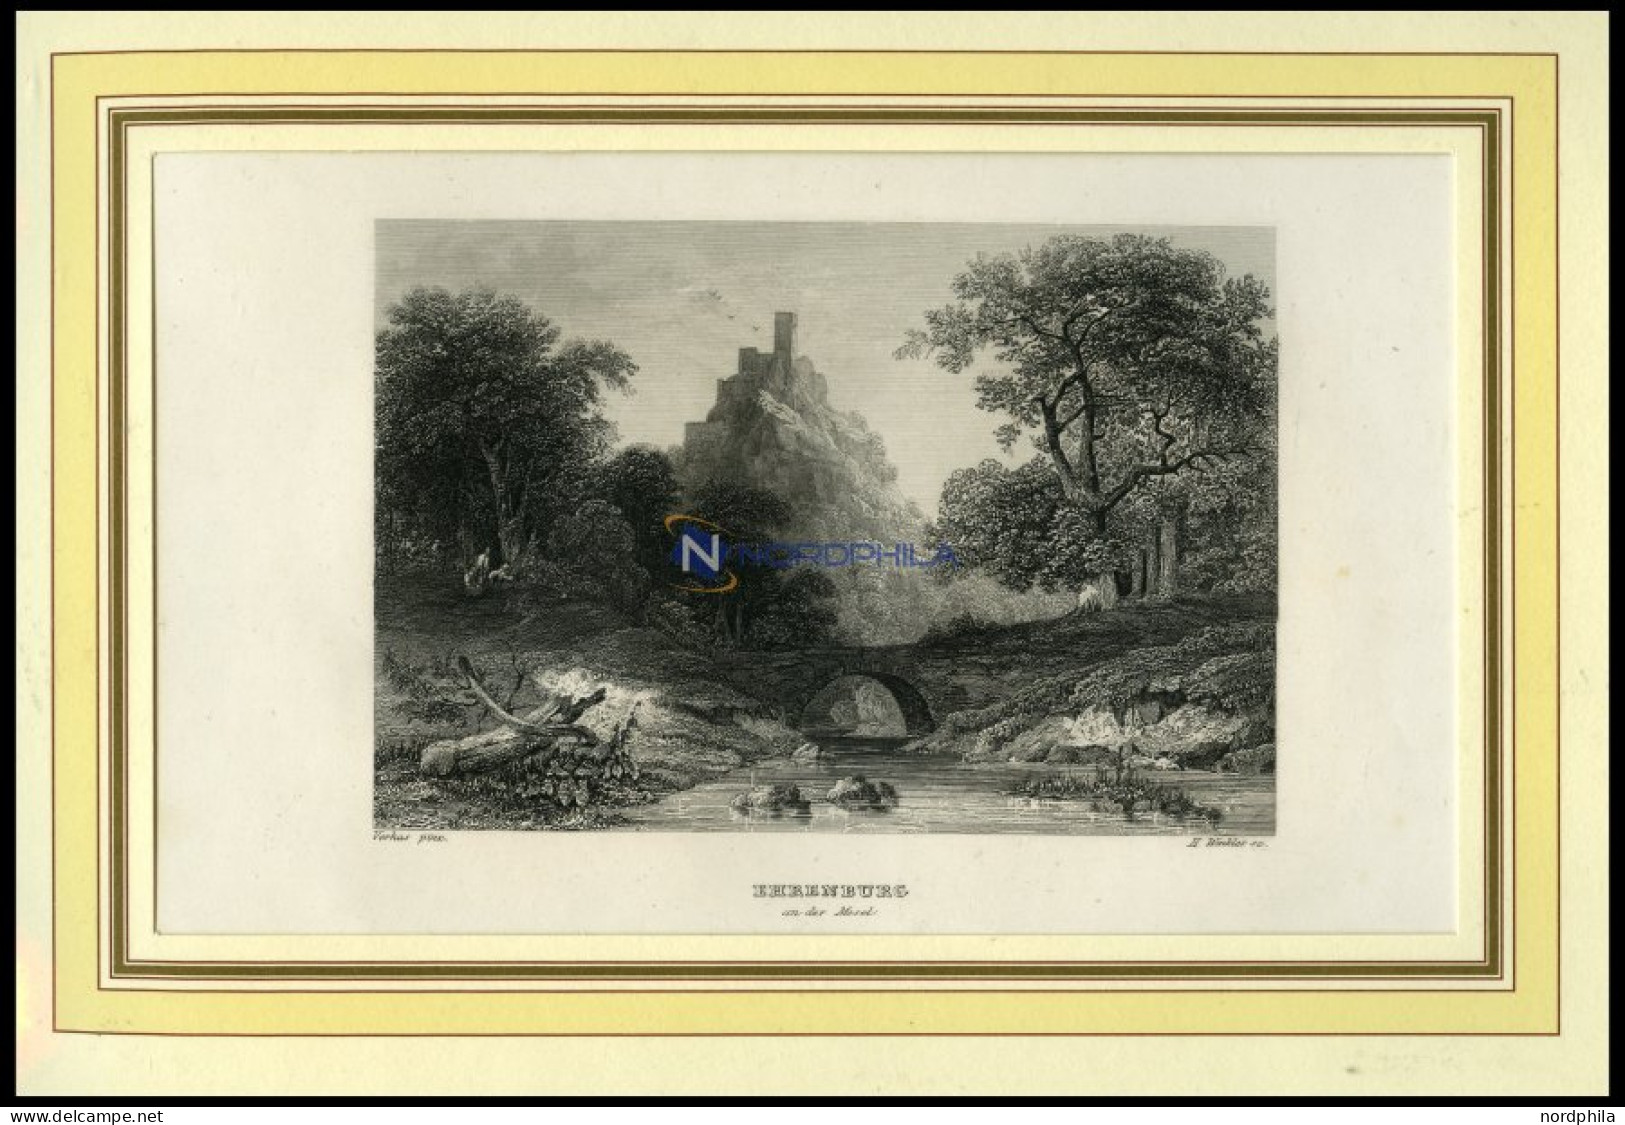 EHRENBURG An Der Mosel, Stahlstich Von Verhas/Winkles Um 1840 - Stiche & Gravuren